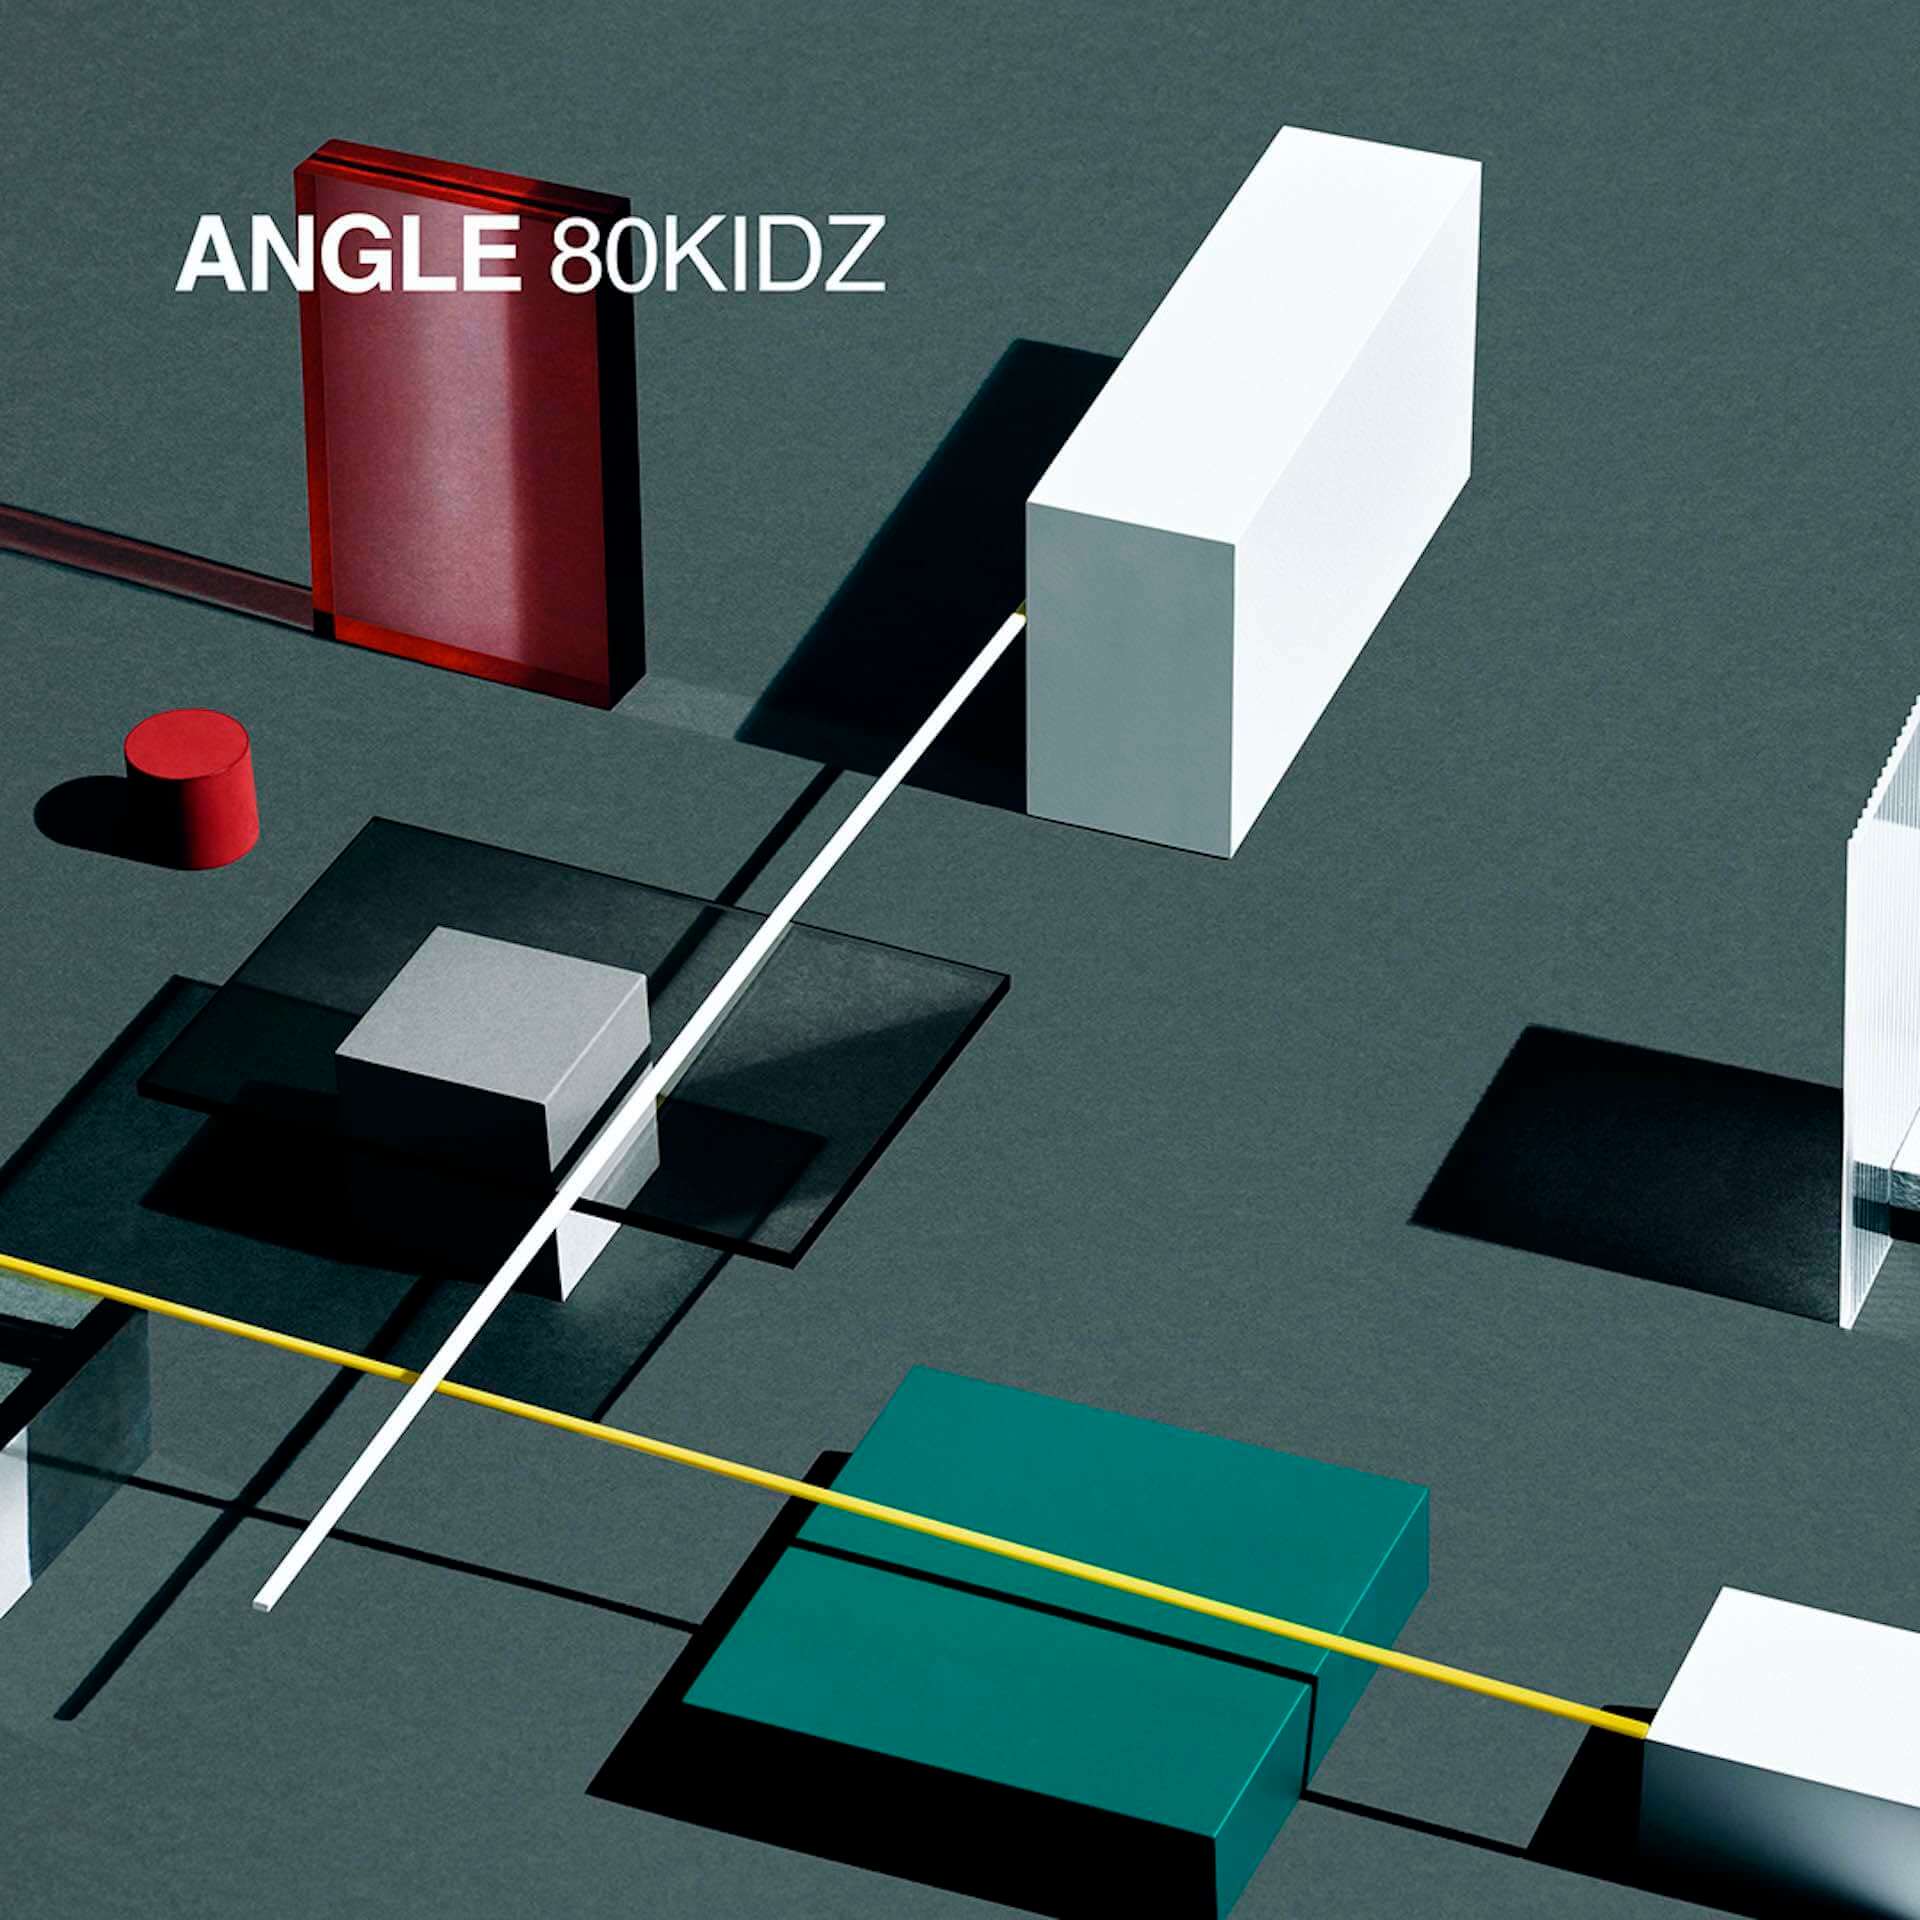 80KIDZが約5年ぶりの新アルバム『ANGLE』をリリース決定！AAAMYYY、mabanua、YonYon、Maika Loubtéらが参加 music210212_80kidz_3-1920x1920